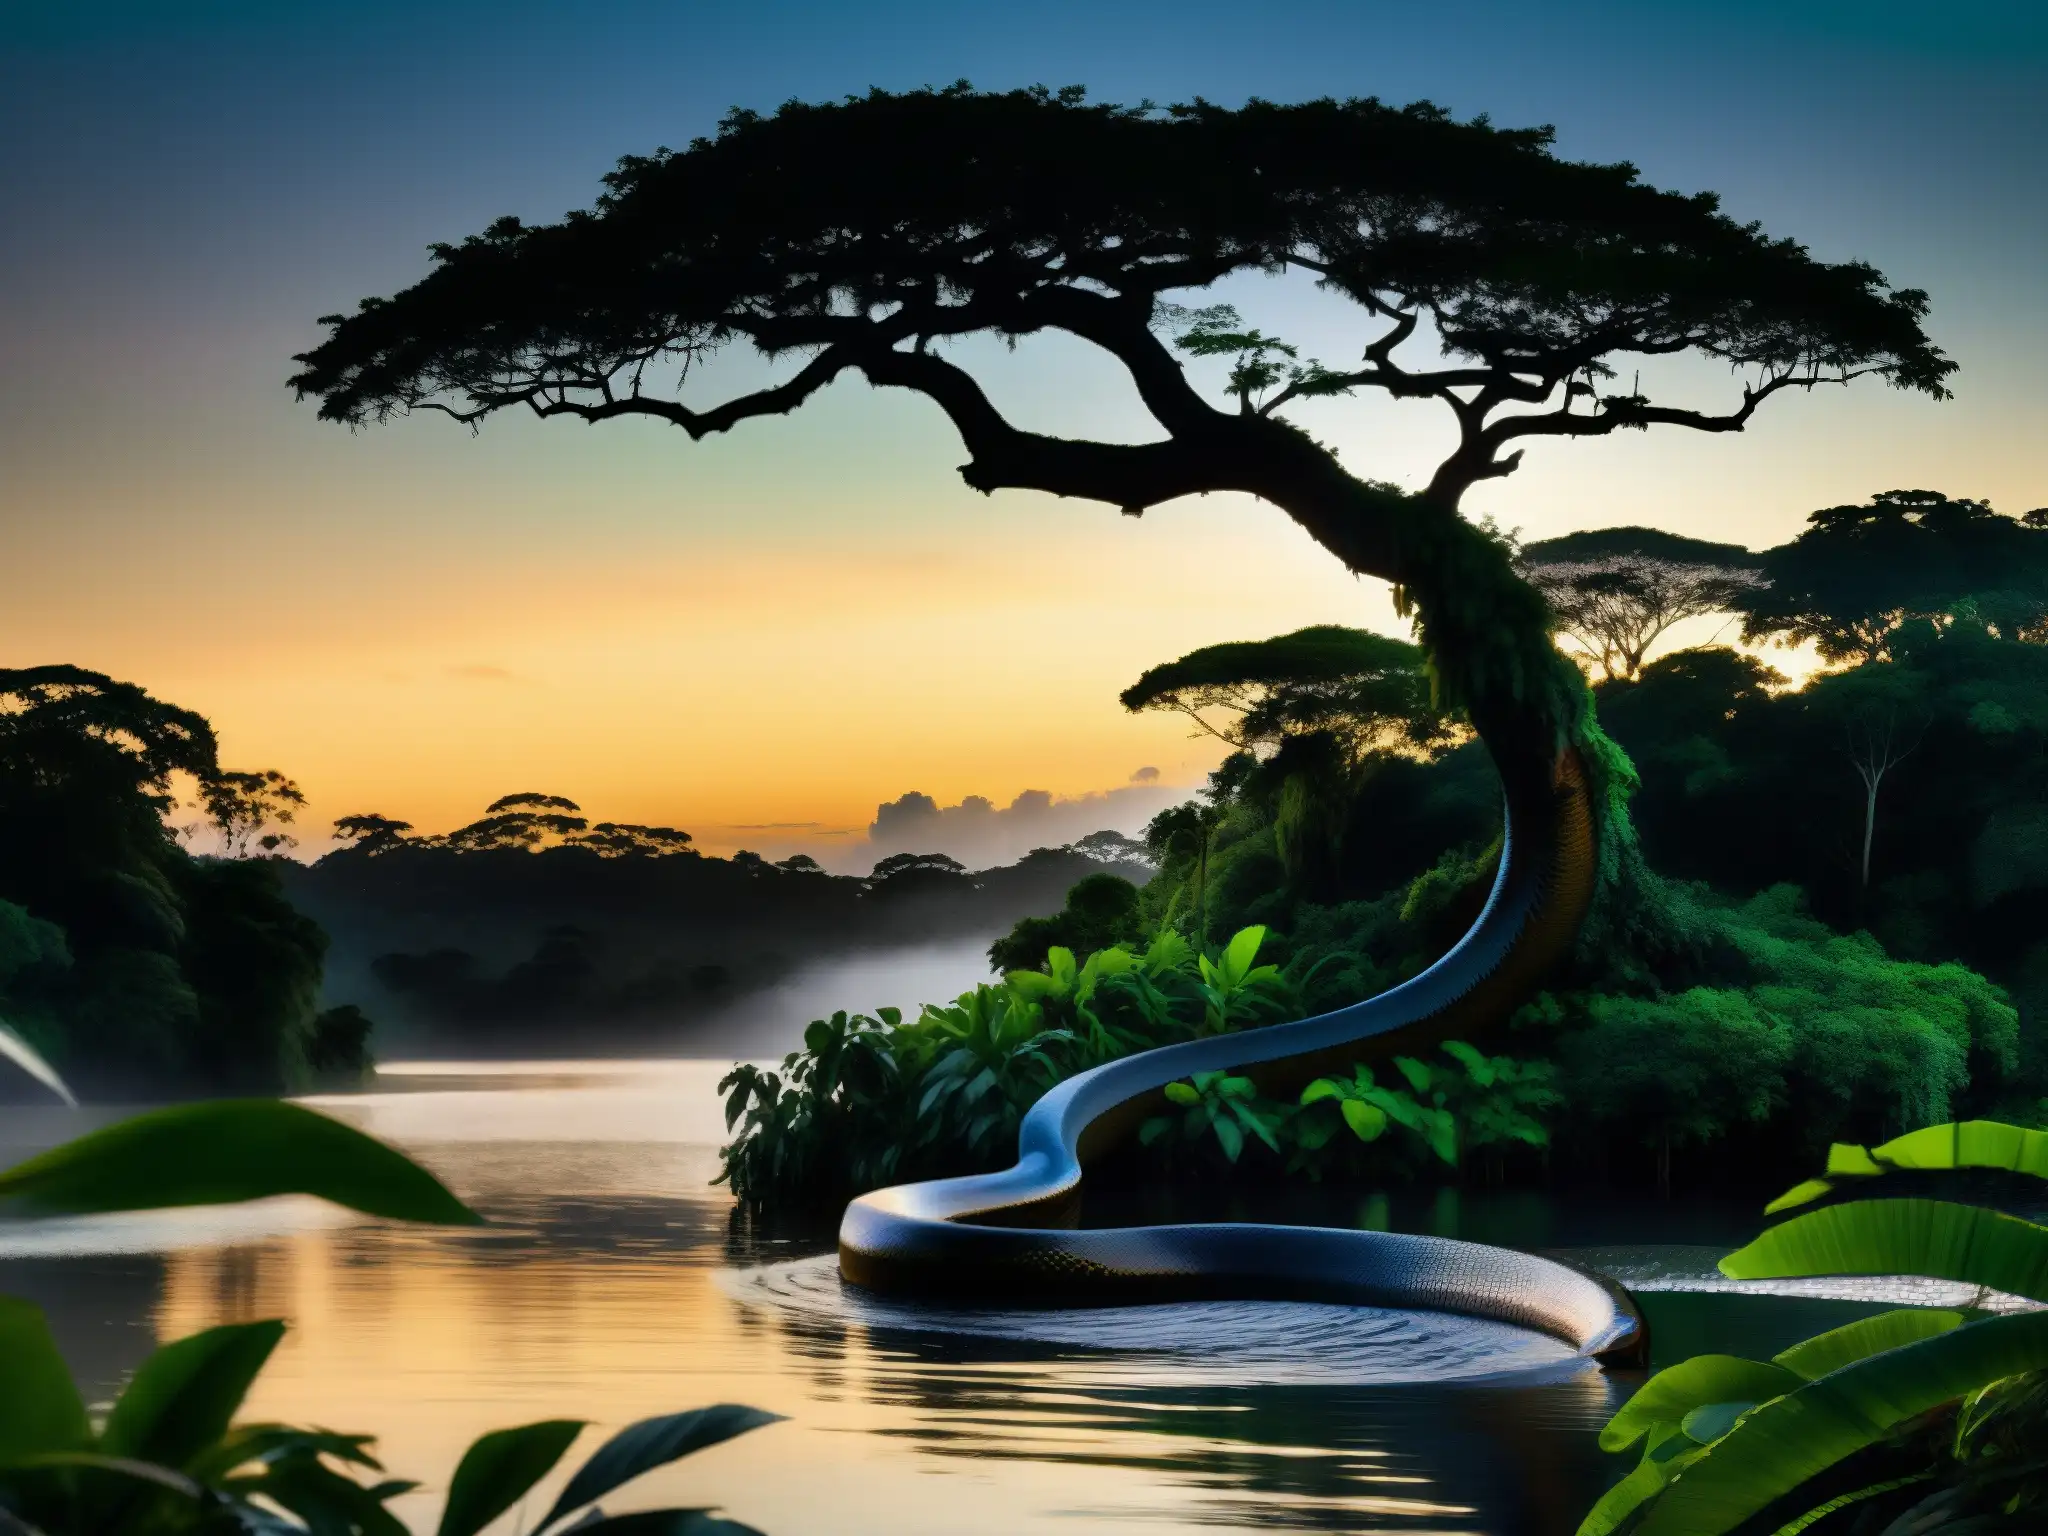 La Madre del Agua en el Amazonas: imagen detallada del atardecer en la selva amazónica, con una anaconda en un árbol junto a un cuerpo de agua sereno